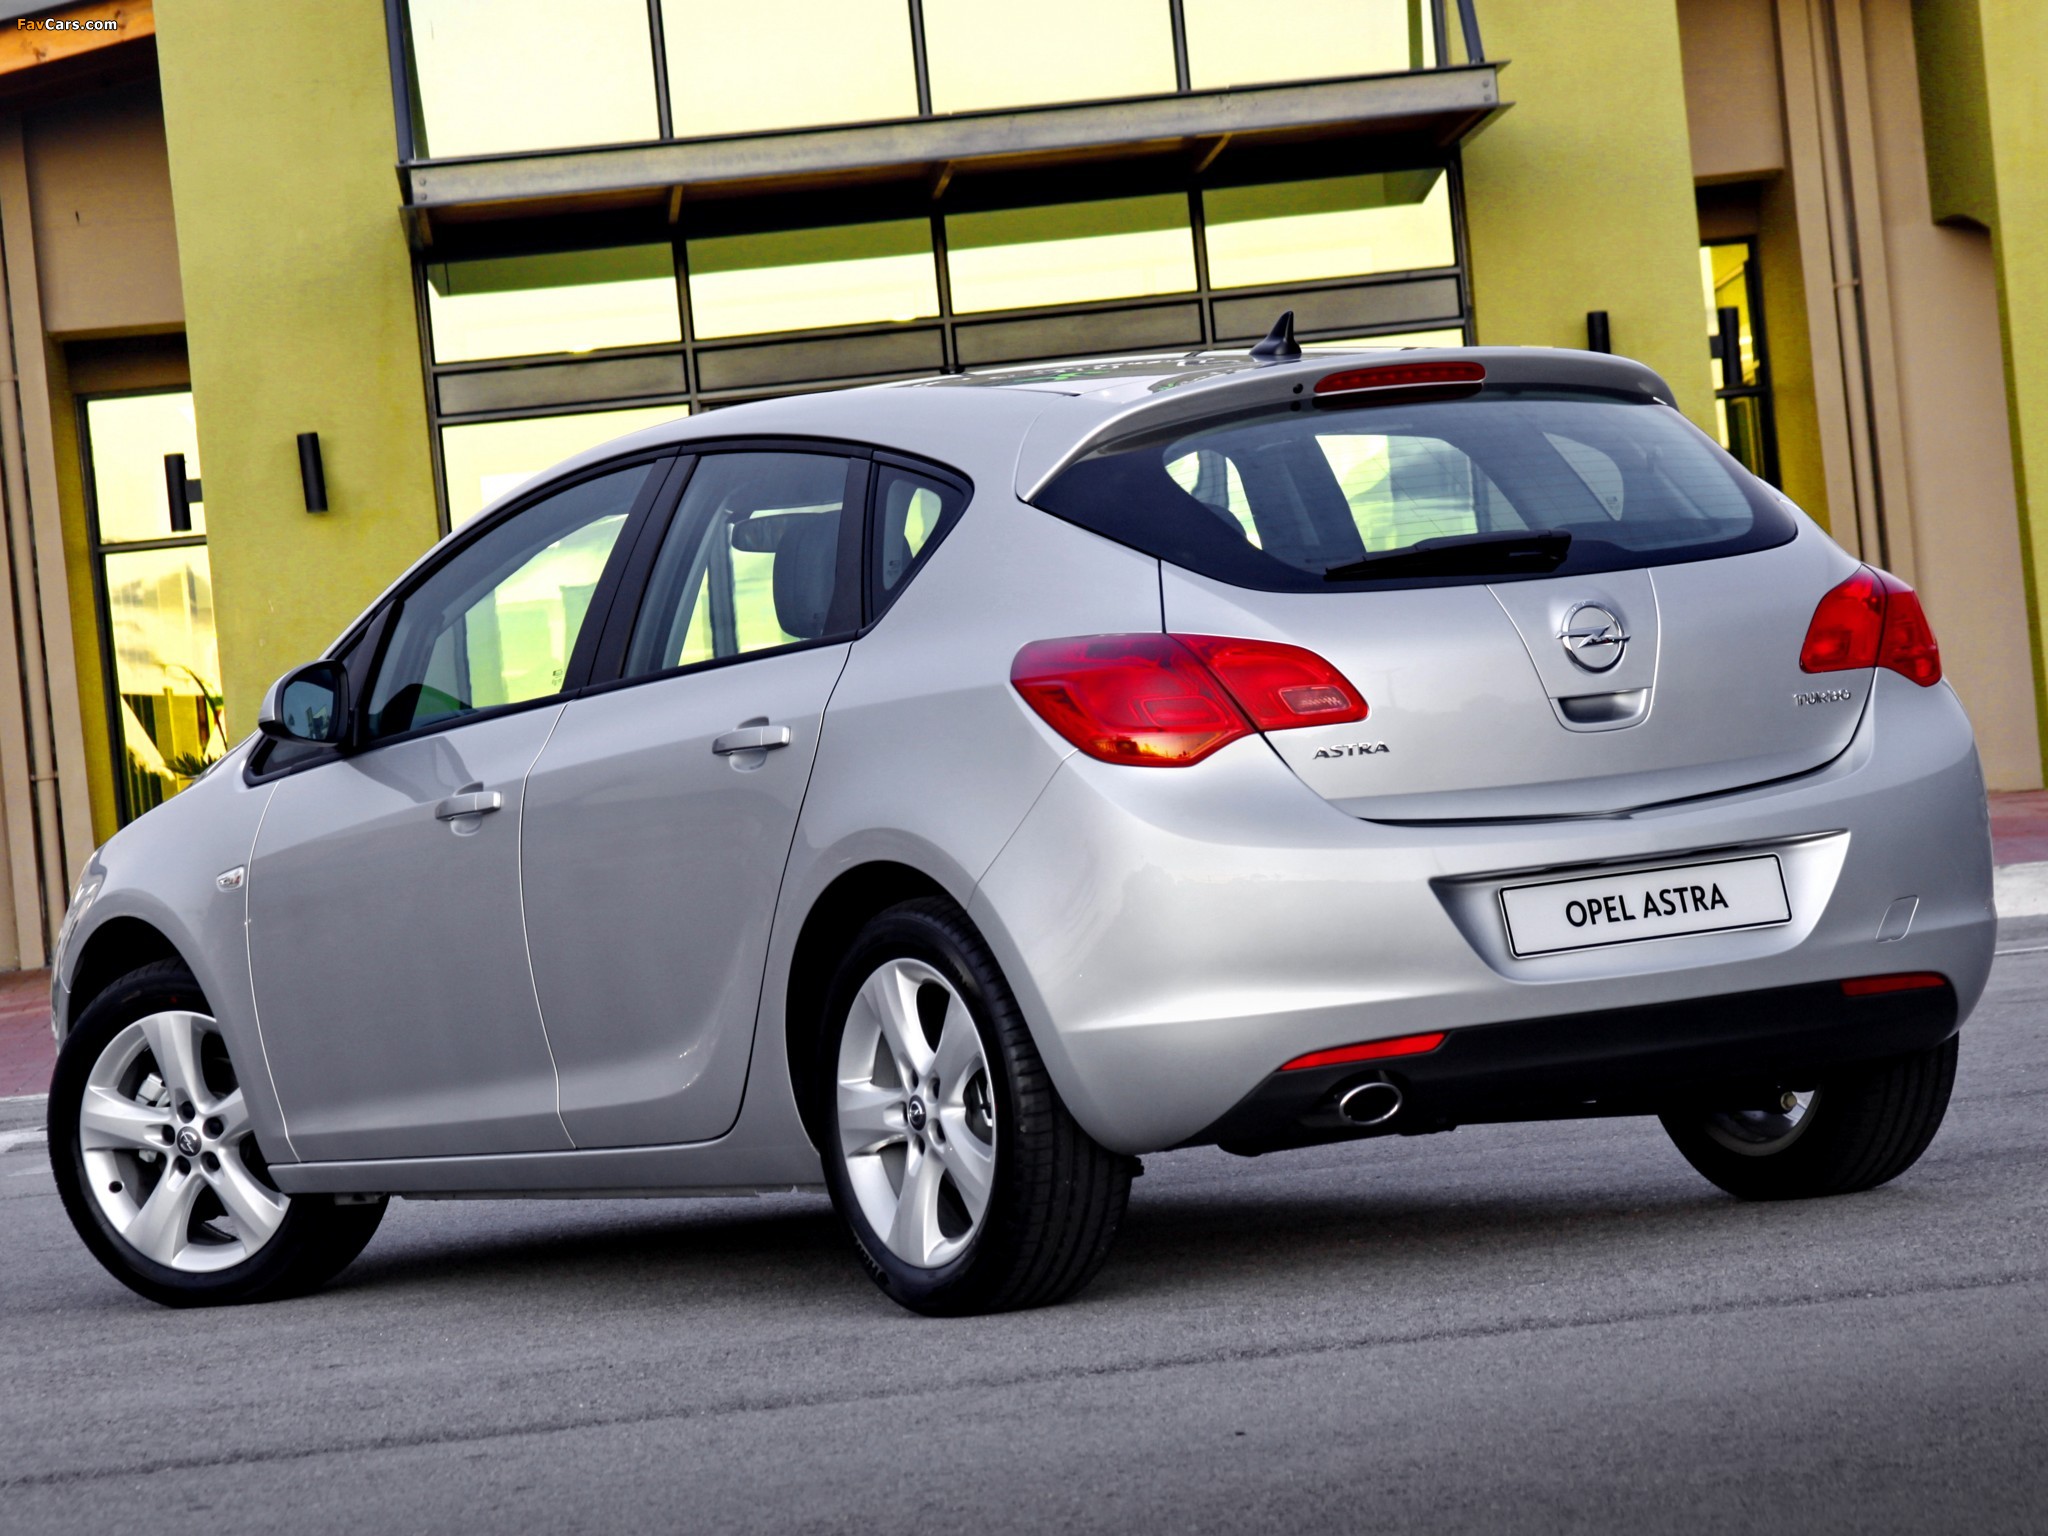 Купить в твери хэтчбек. Opel Astra j. Opel Astra Hatchback 2010. Opel Astra 2010 хэтчбек.